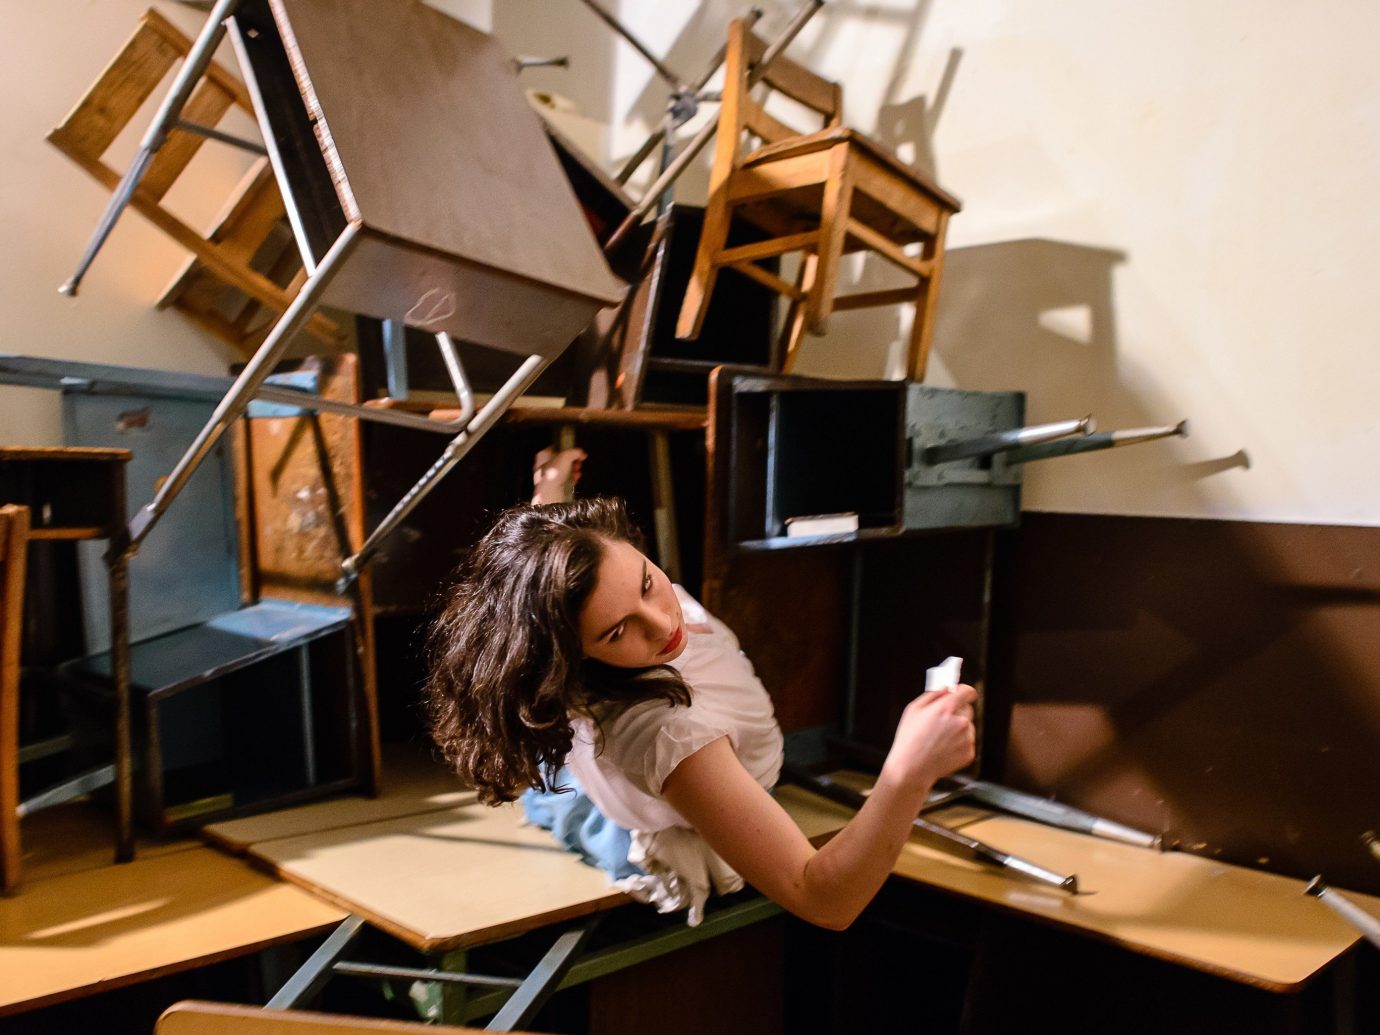 Offbeat person indoor laptop musician pianist worktable